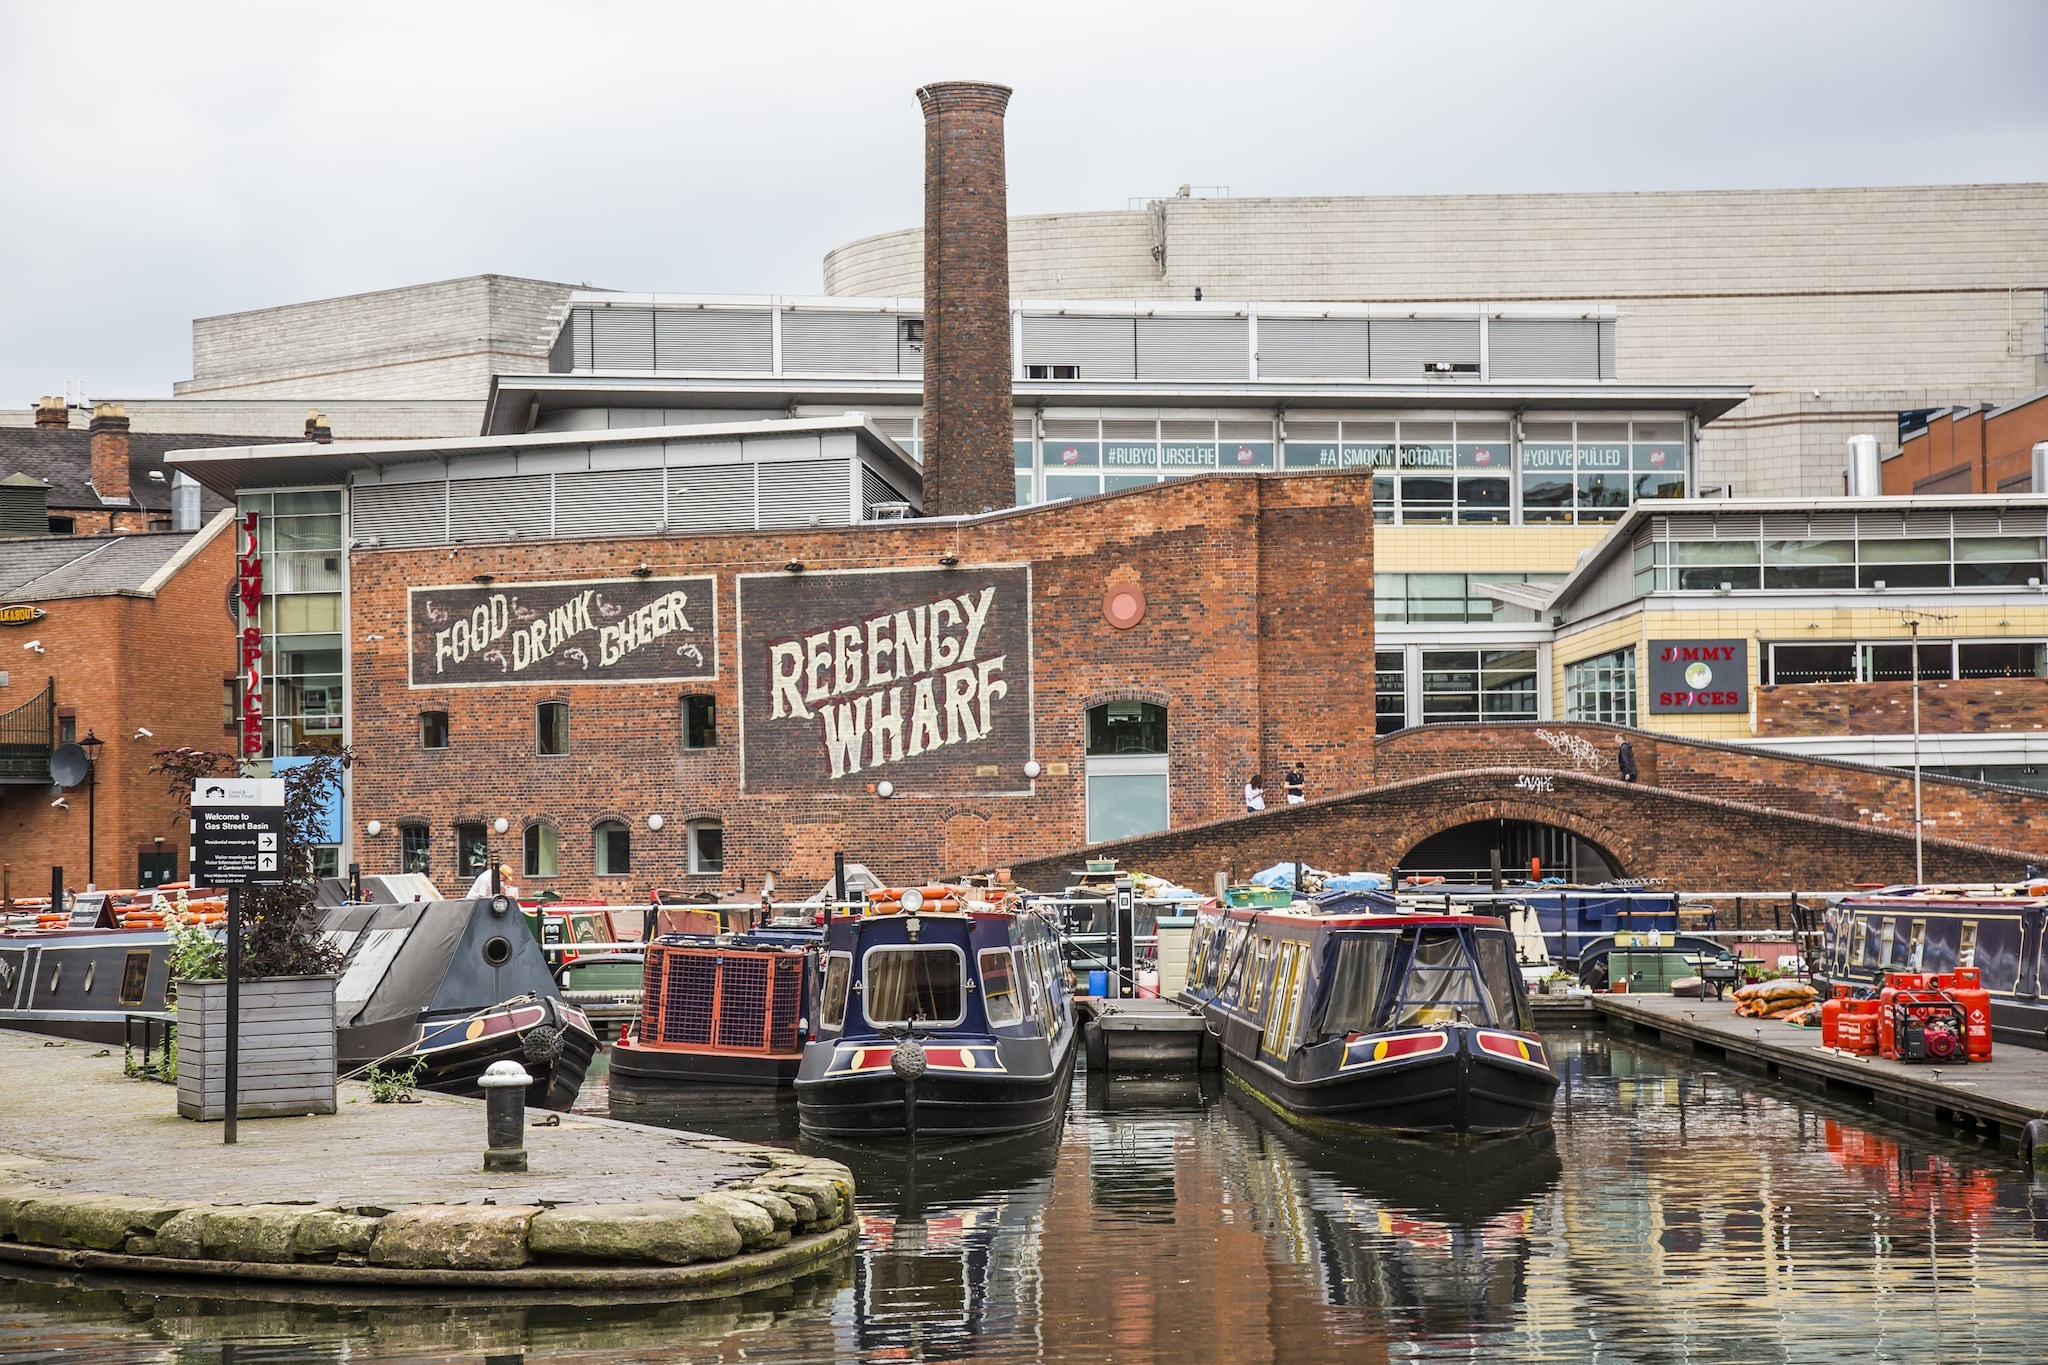 The best waterside spots in Birmingham - things to do in Birmingham